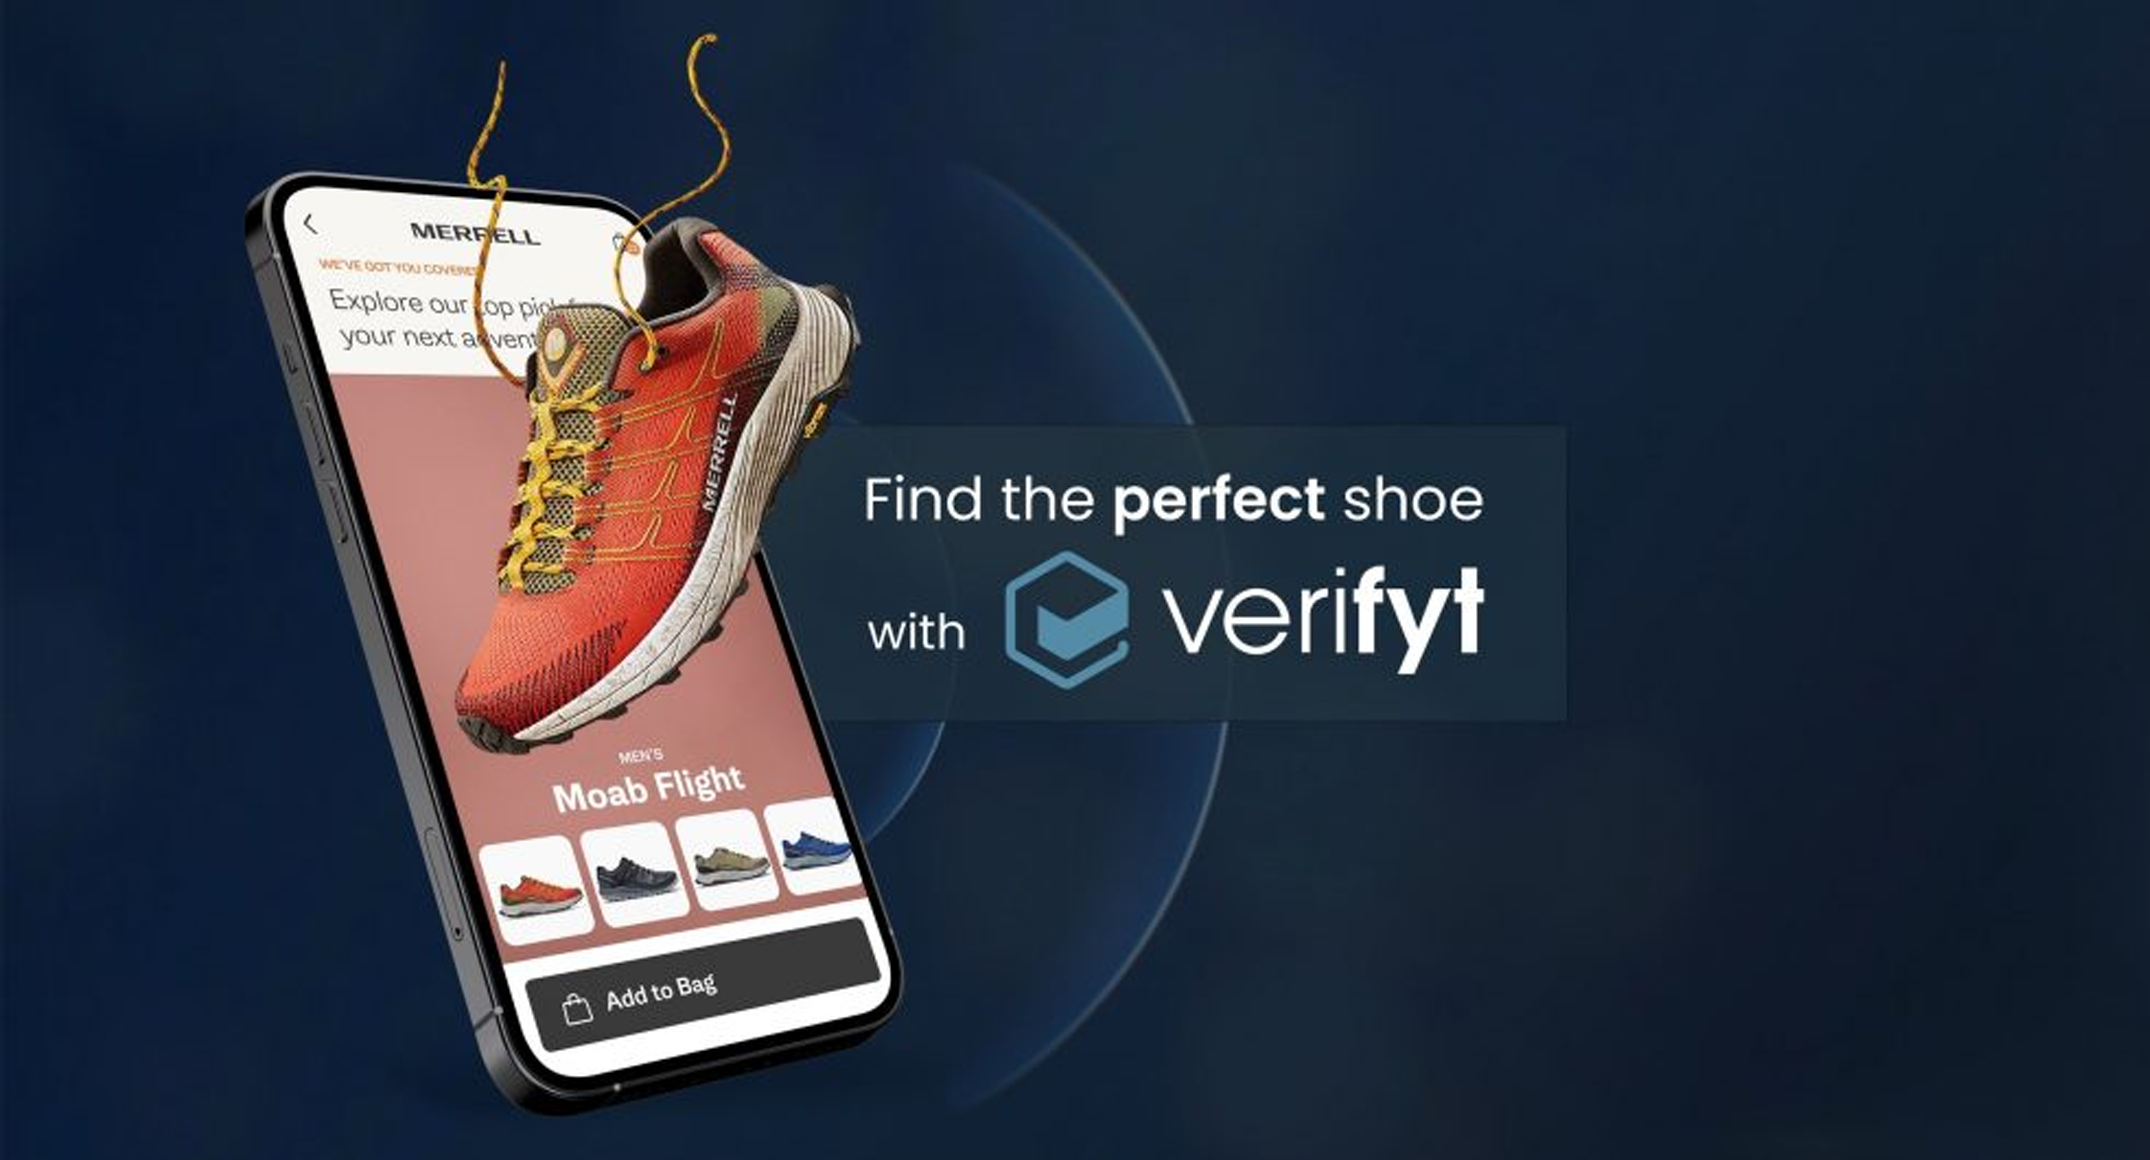 Merrell lanceert beta versie van schoenenadviseur app